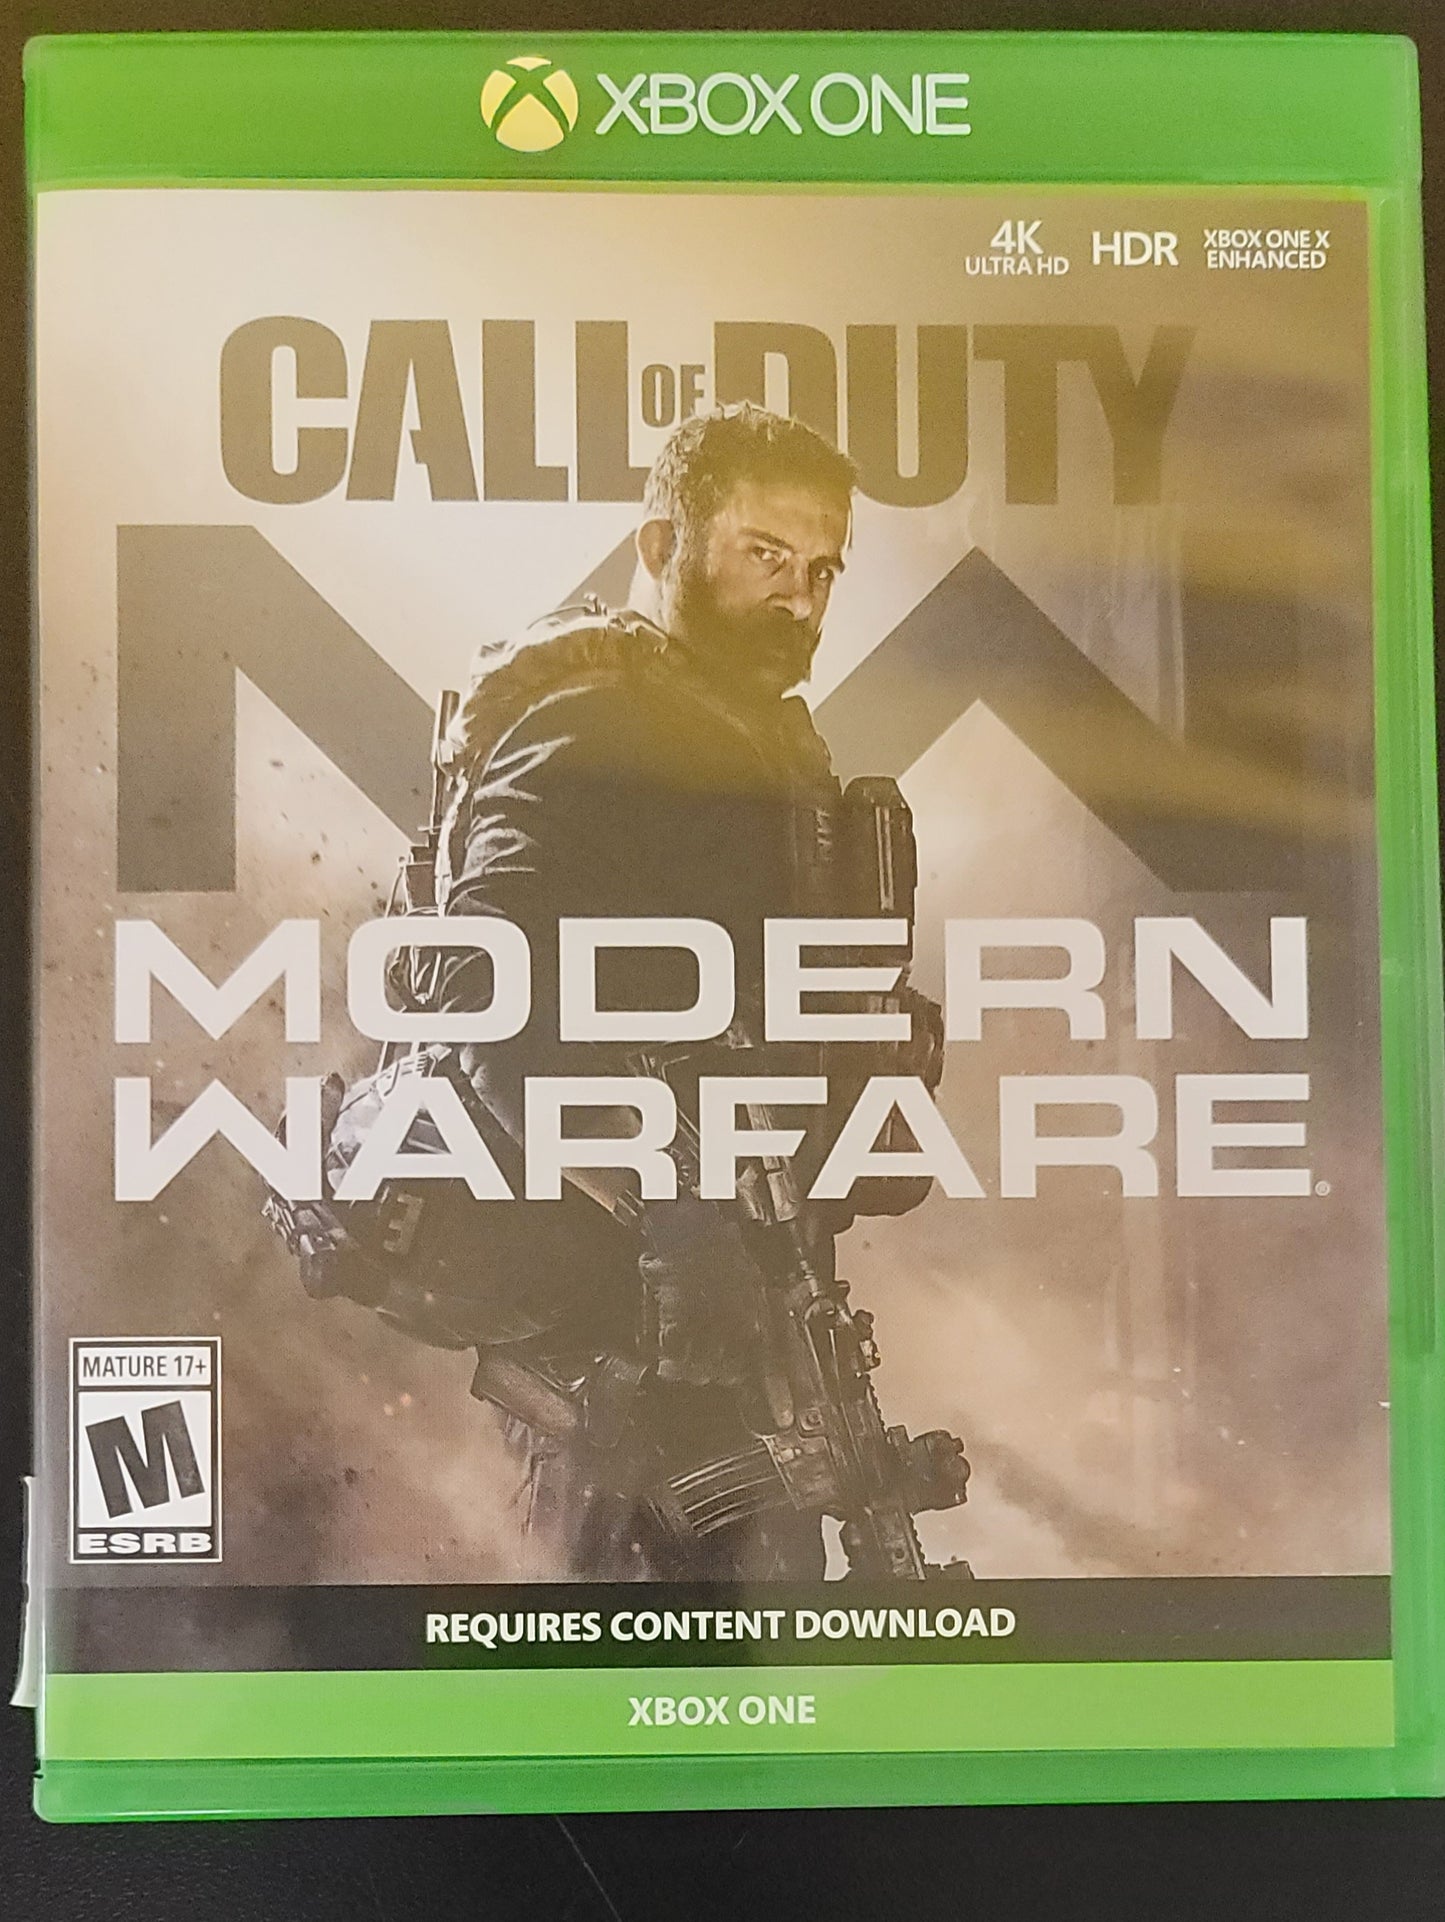 Call of Duty Modern Warfare - Xb1 - Used